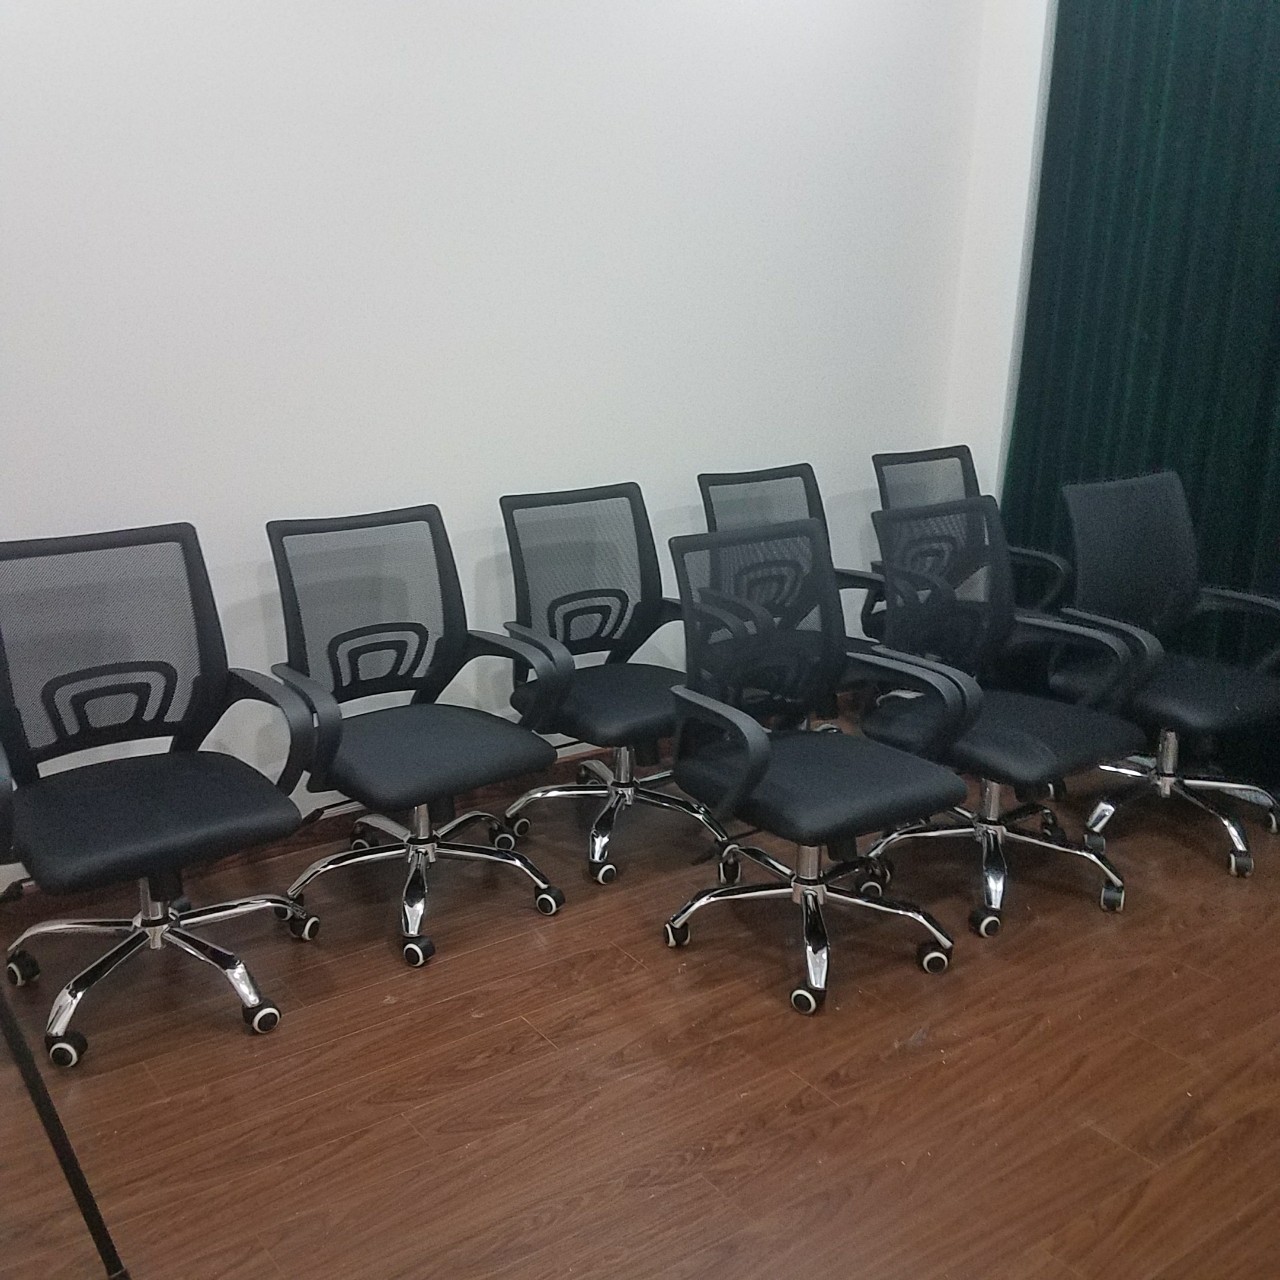 Bàn ghế văn phòng Khang Gia: Bạn đang tìm kiếm bàn ghế văn phòng để nâng cao năng suất công việc của mình? Hãy cùng Khang Gia tìm hiểu về các sản phẩm bàn ghế văn phòng tối ưu cho các công việc văn phòng, chúng tôi cam kết về chất lượng và giá cả hợp lý. Bức ảnh sẽ cho bạn thấy sự đa dạng và tiện nghi của sản phẩm.